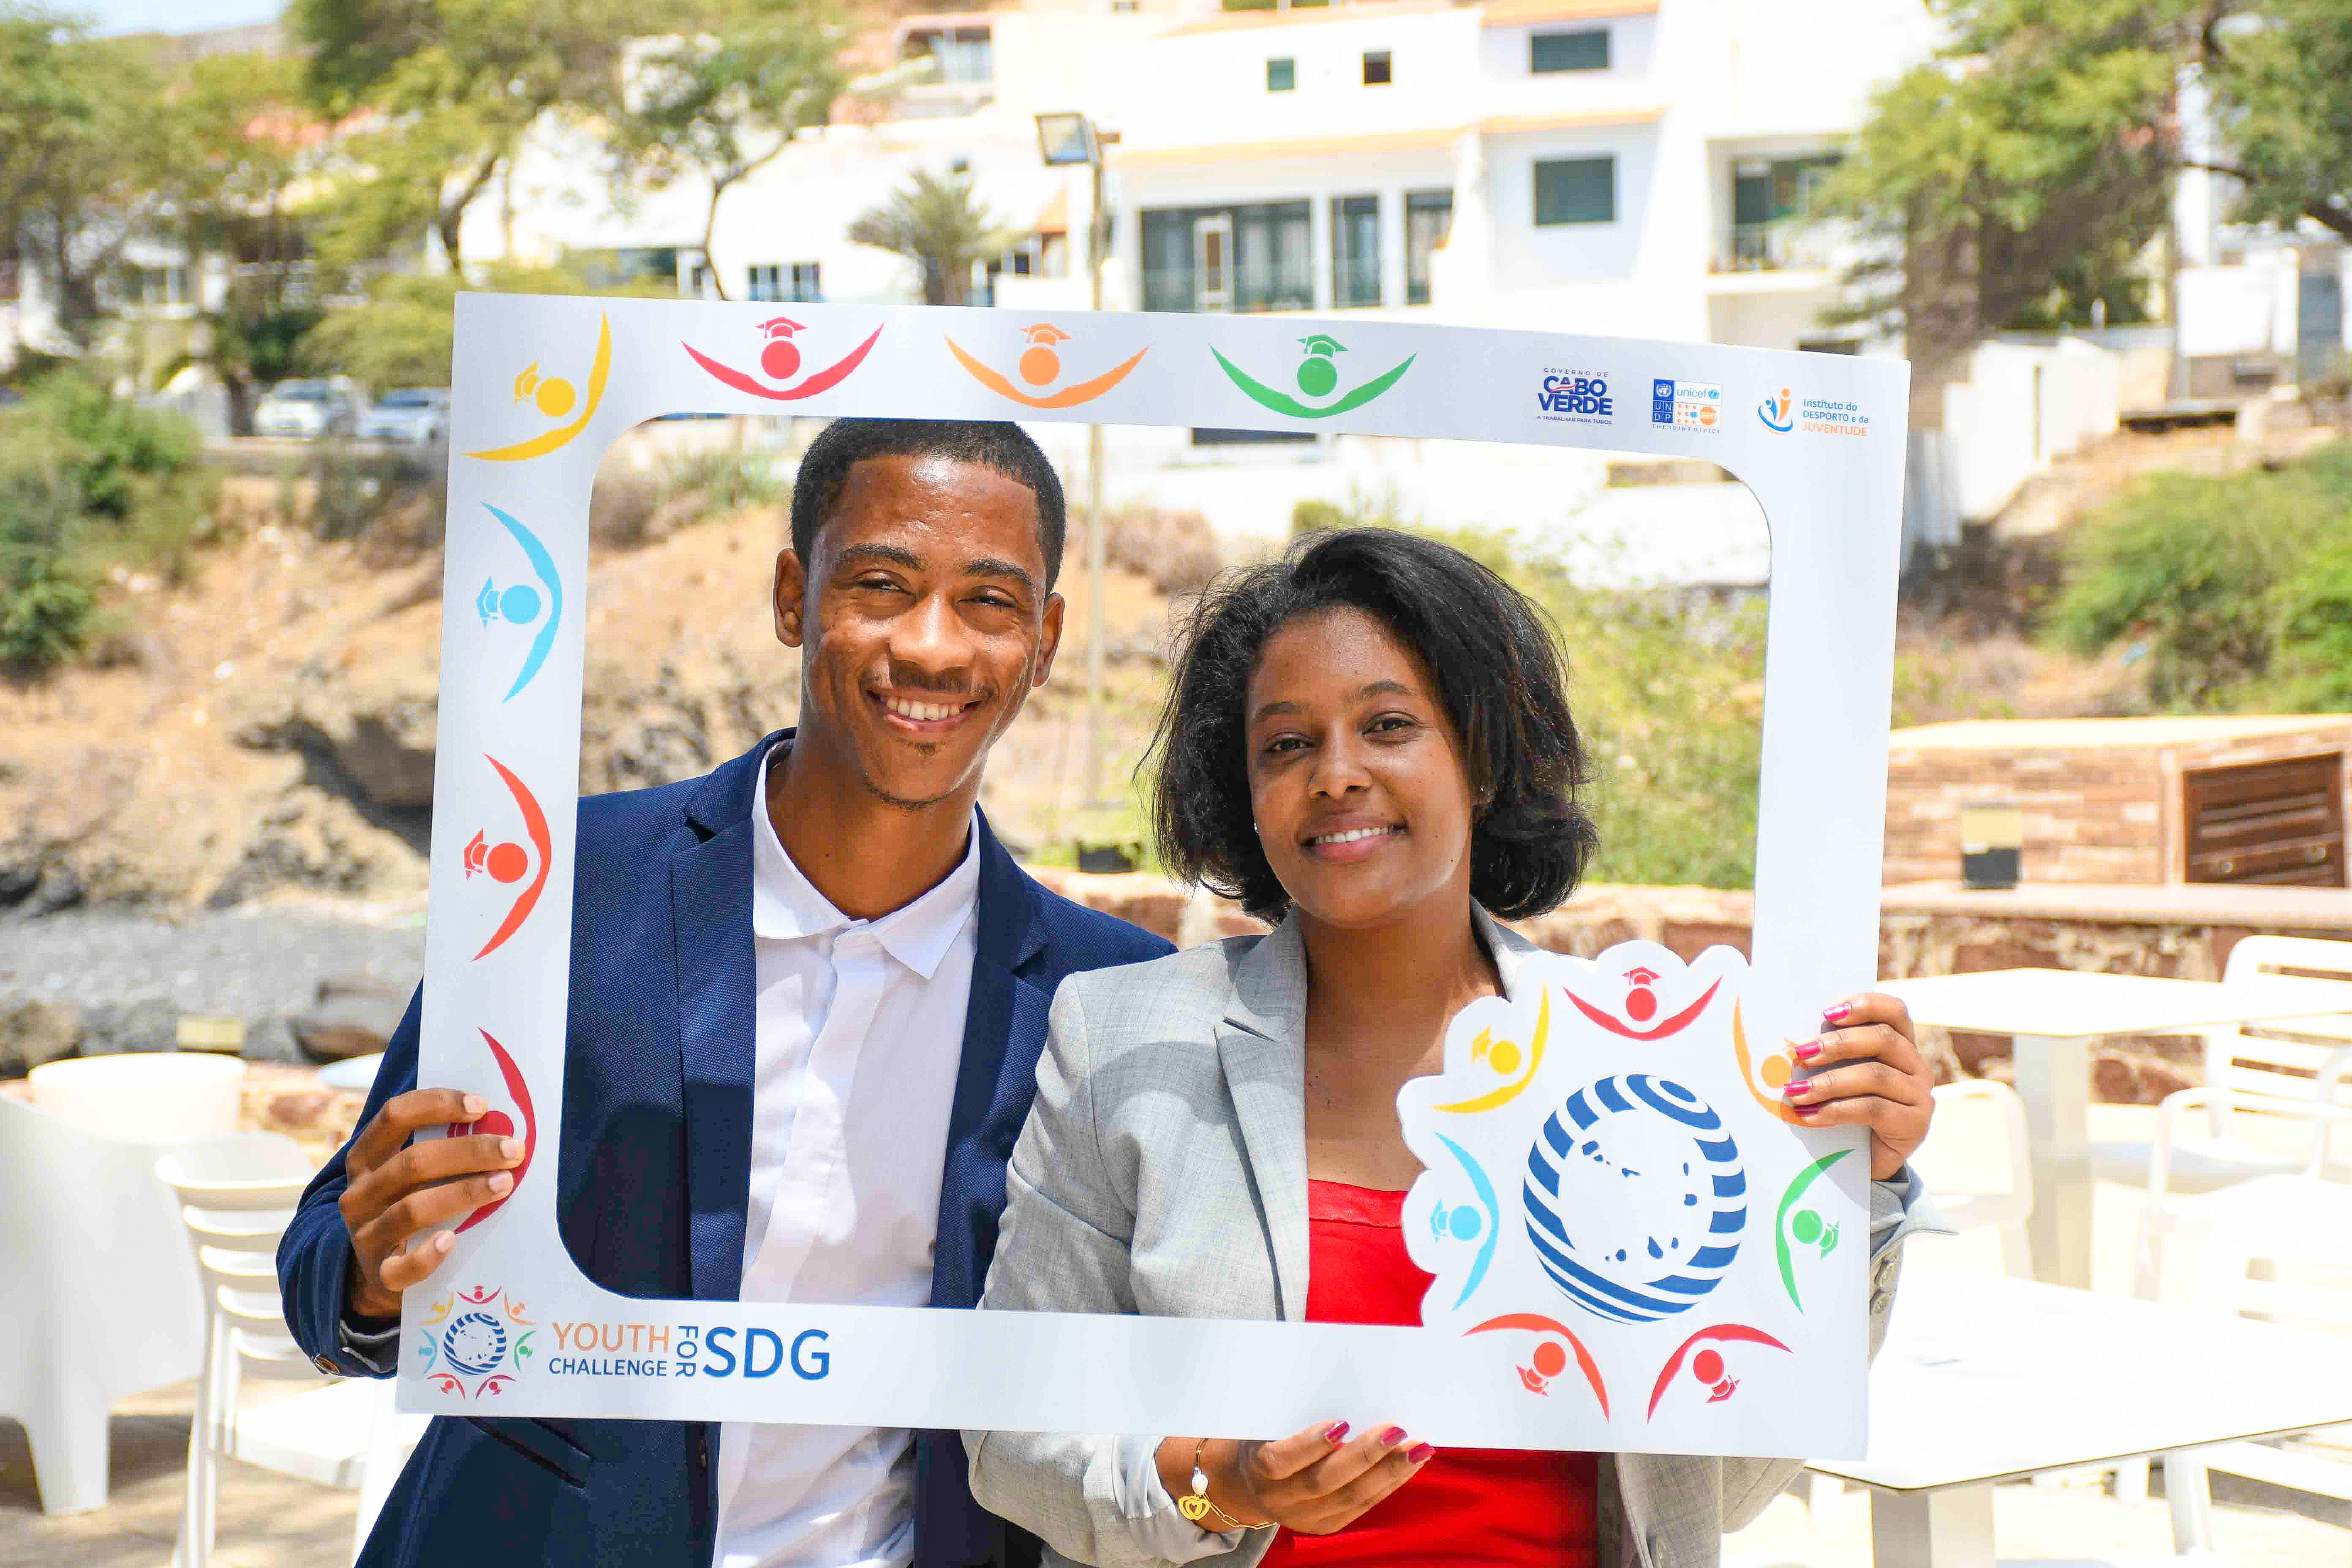 Youth challenge for SDG : “Esta iniciativa é uma oportunidade única para o desenvolvimento das nossas comunidades e dos próprios jovens”